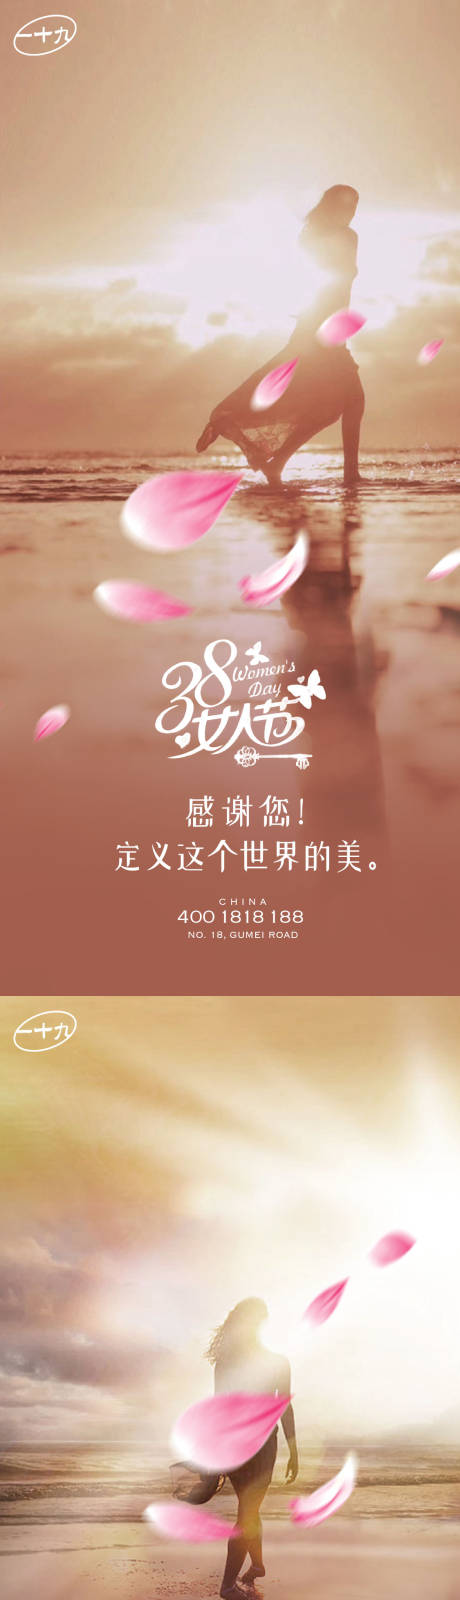 38花瓣女神节海报